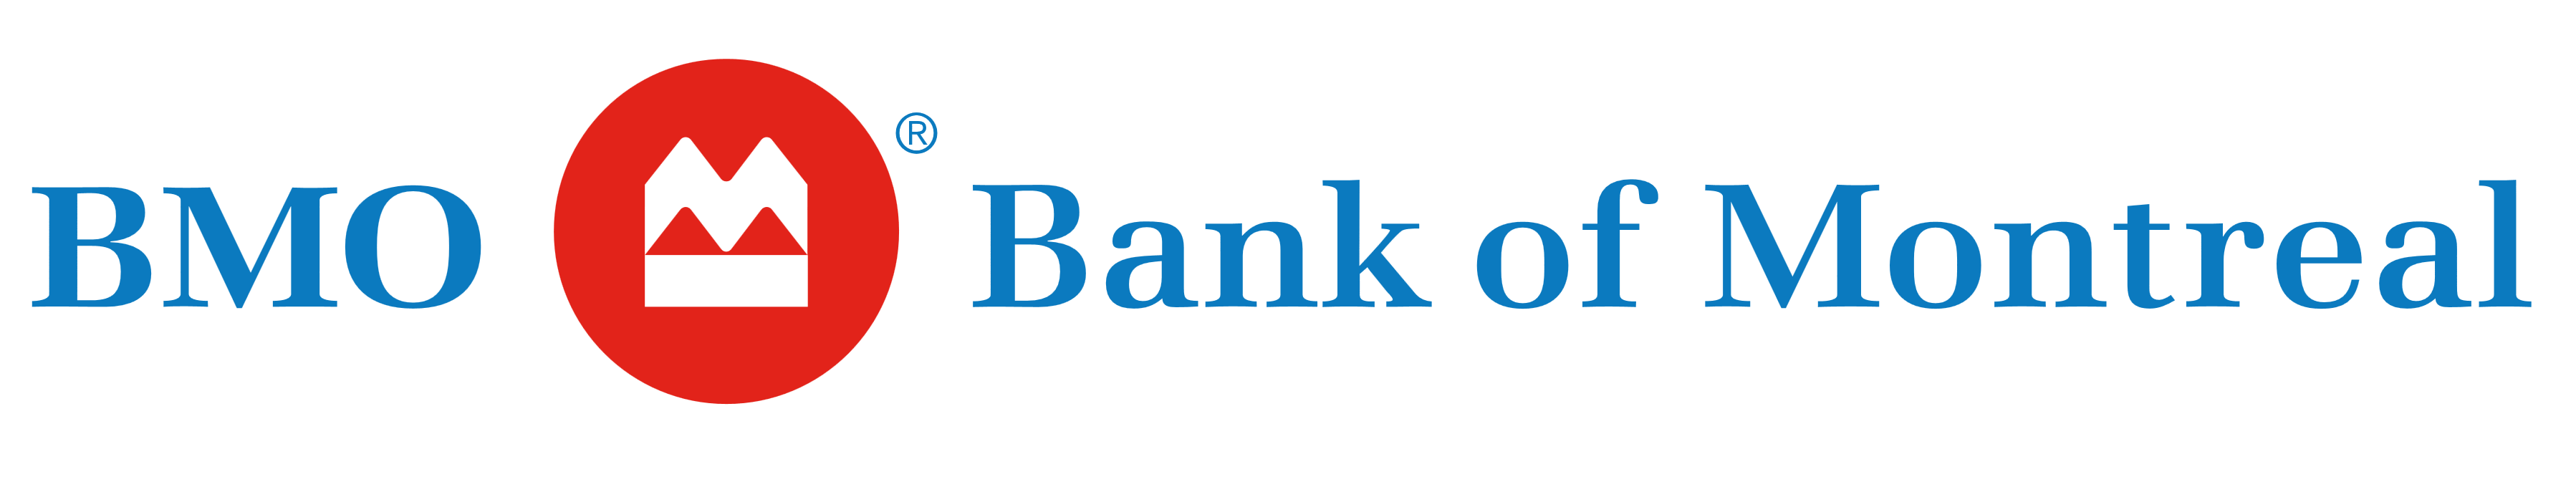 BMO Bank of Montreal logo, logotype